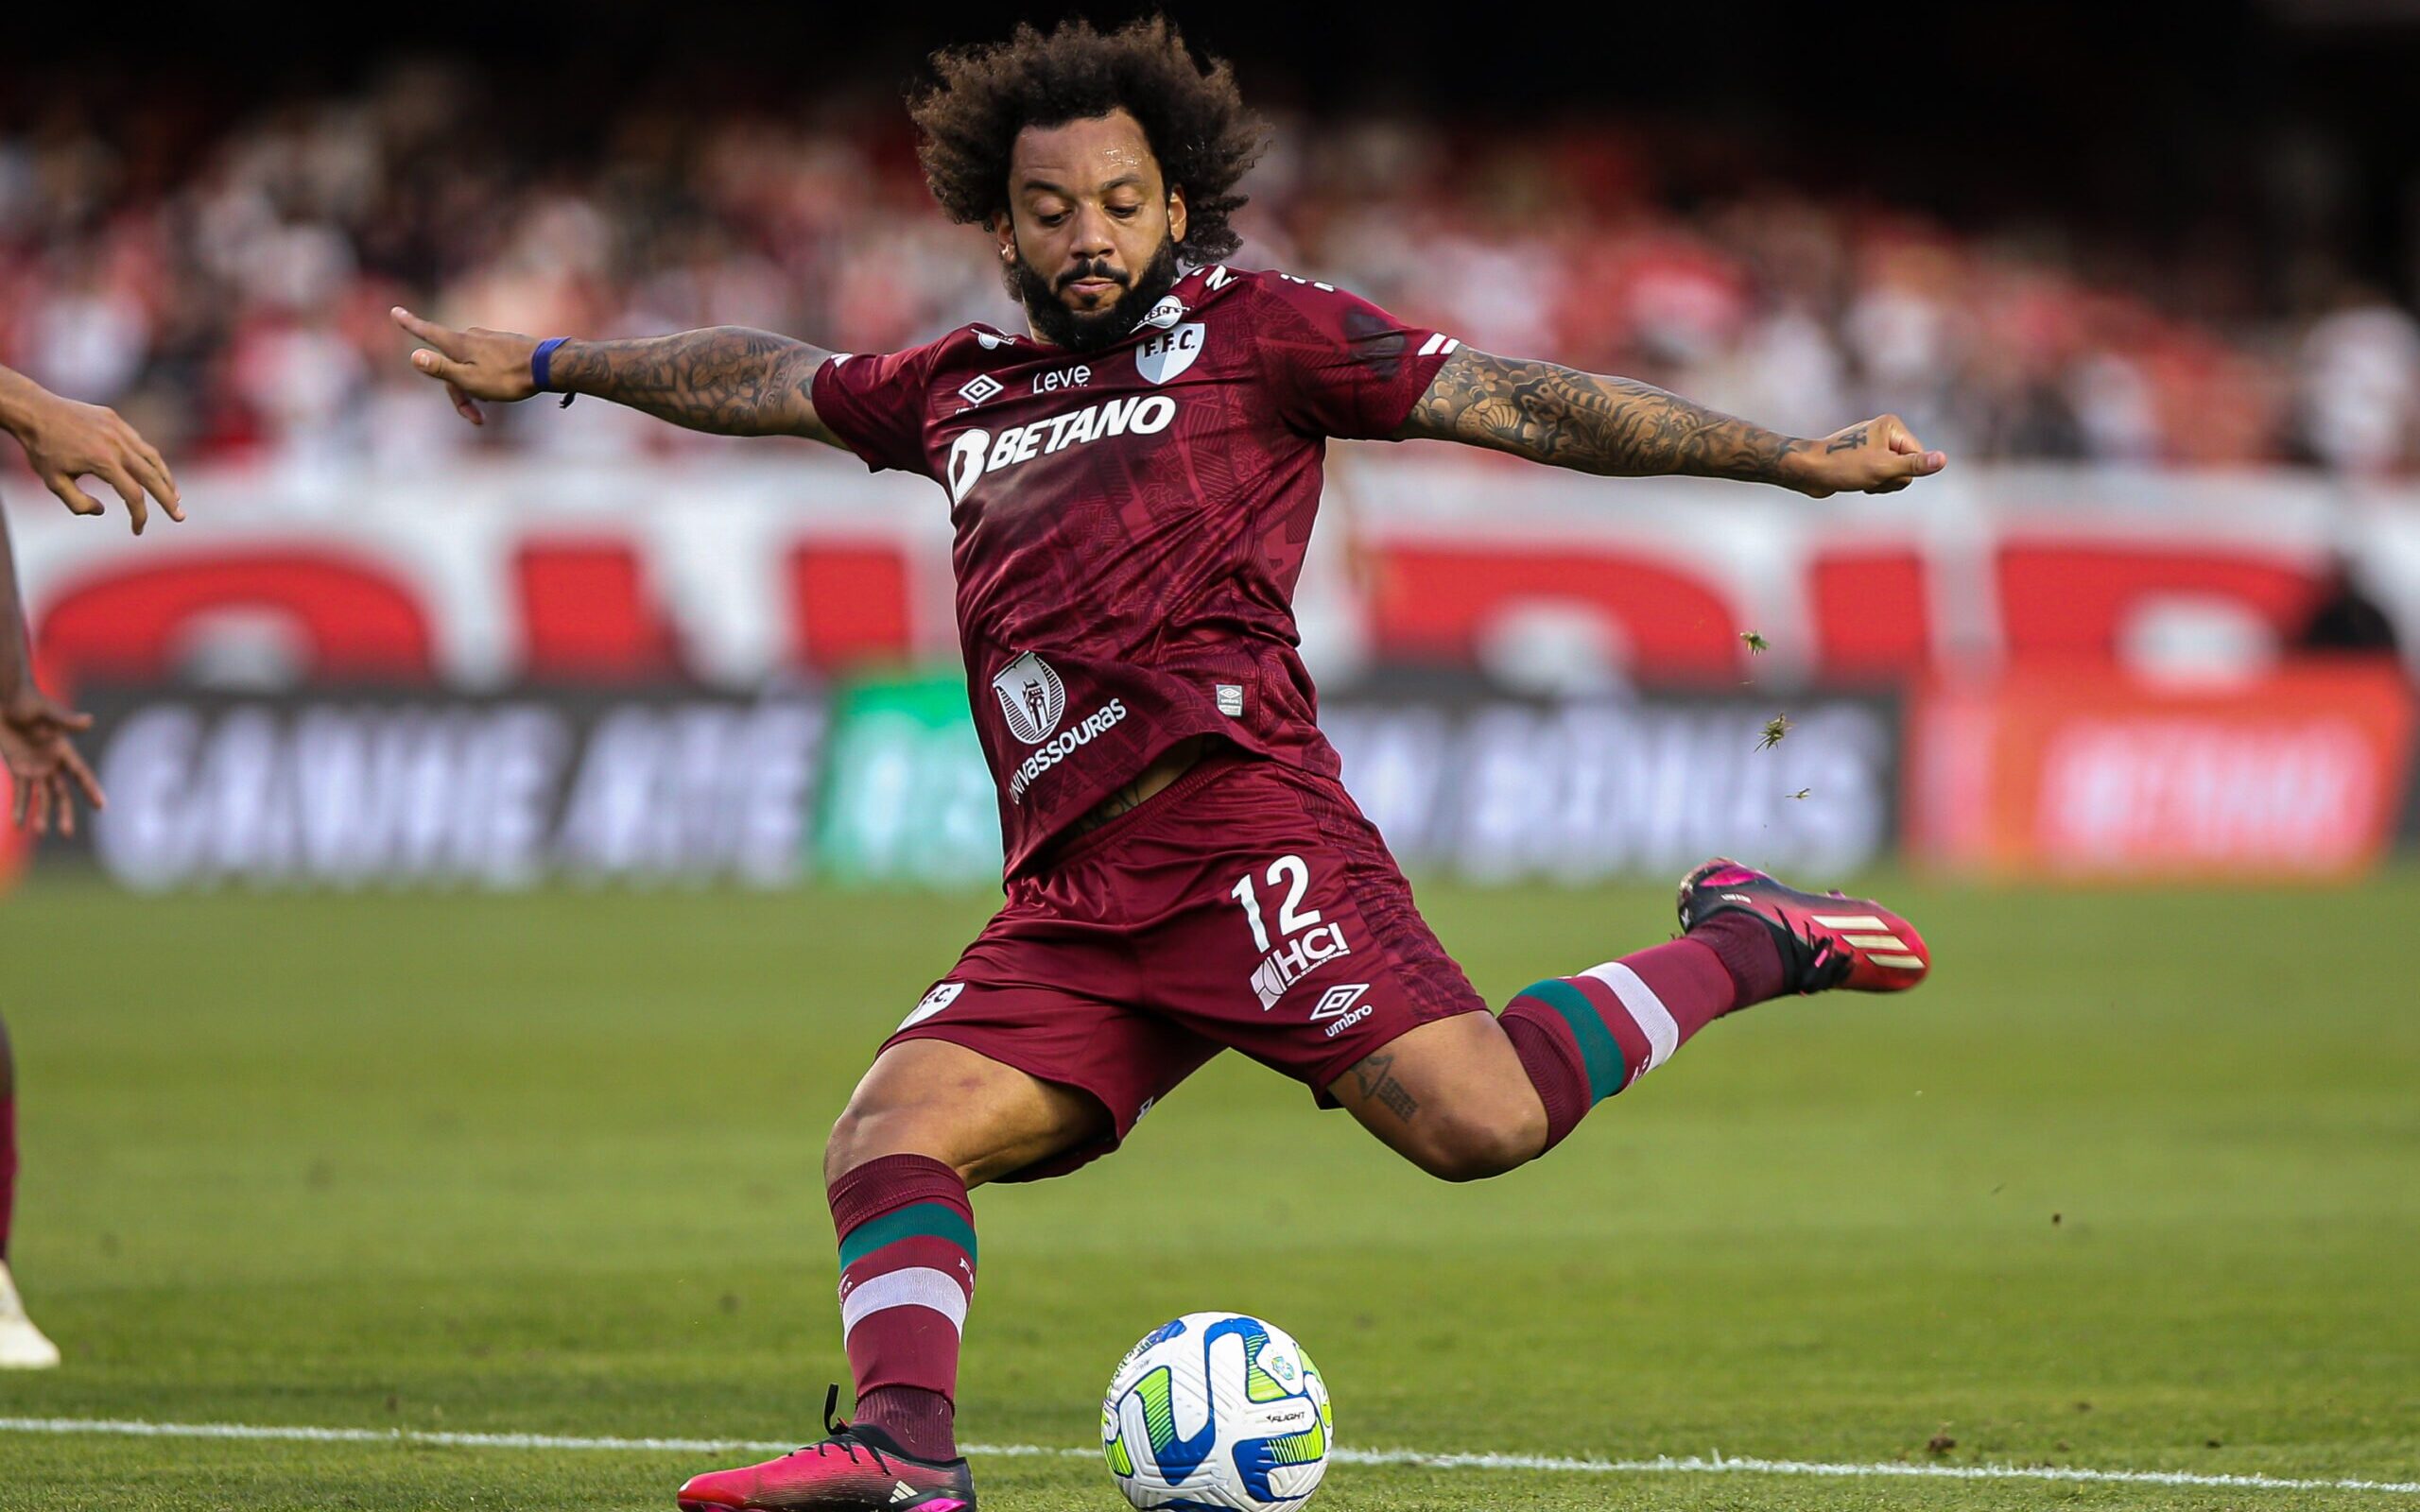 Liderança, raça e técnica: Antônio Carlos é destaque do Orlando City na  atual temporada da MLS - O Hoje.com